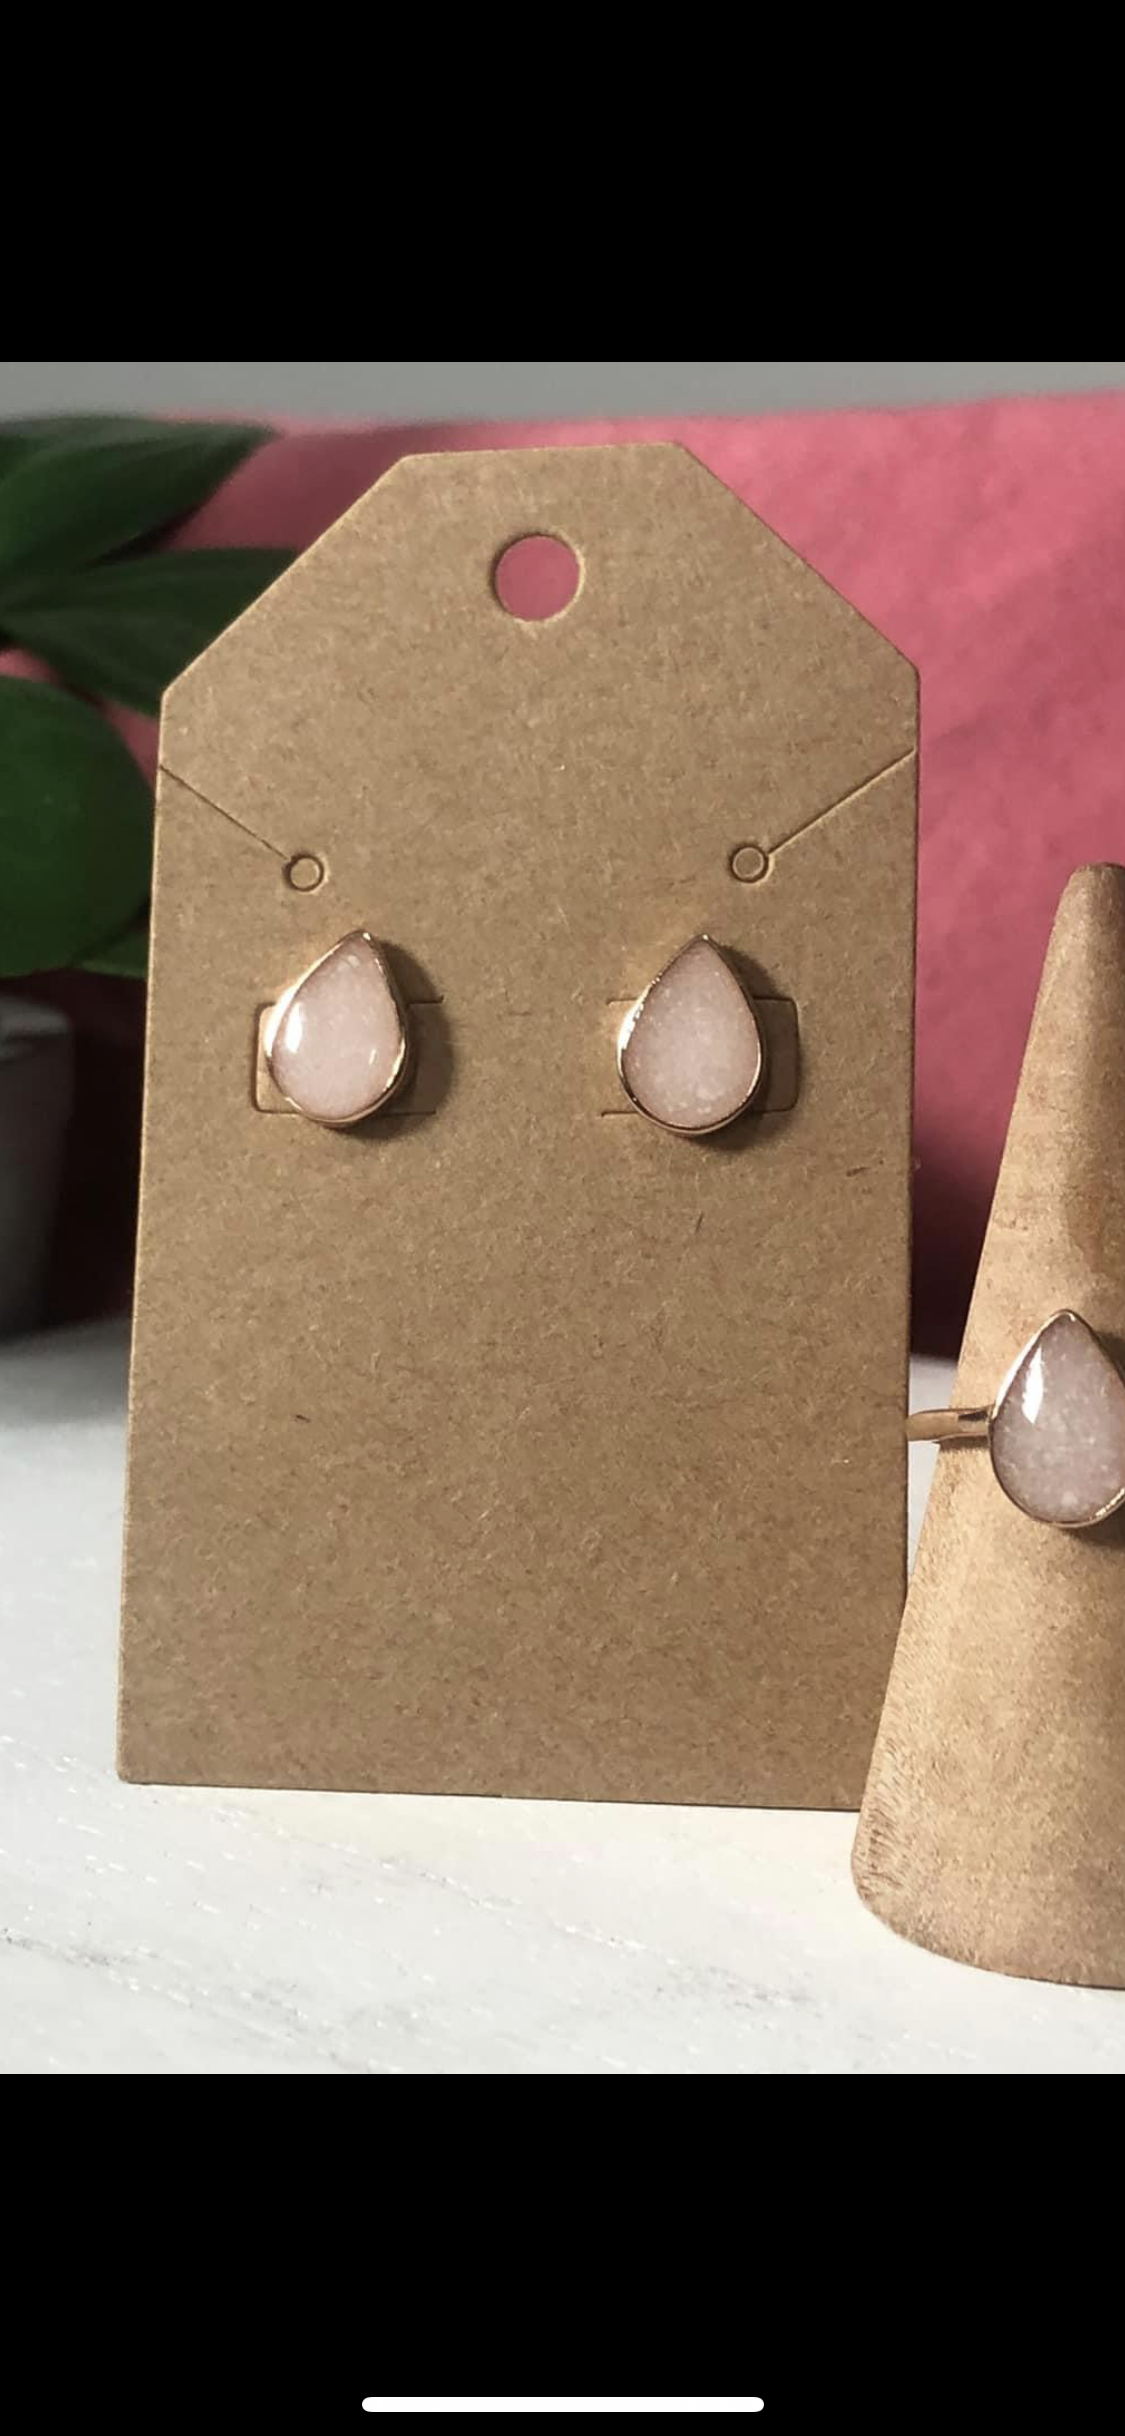 Pear earrings